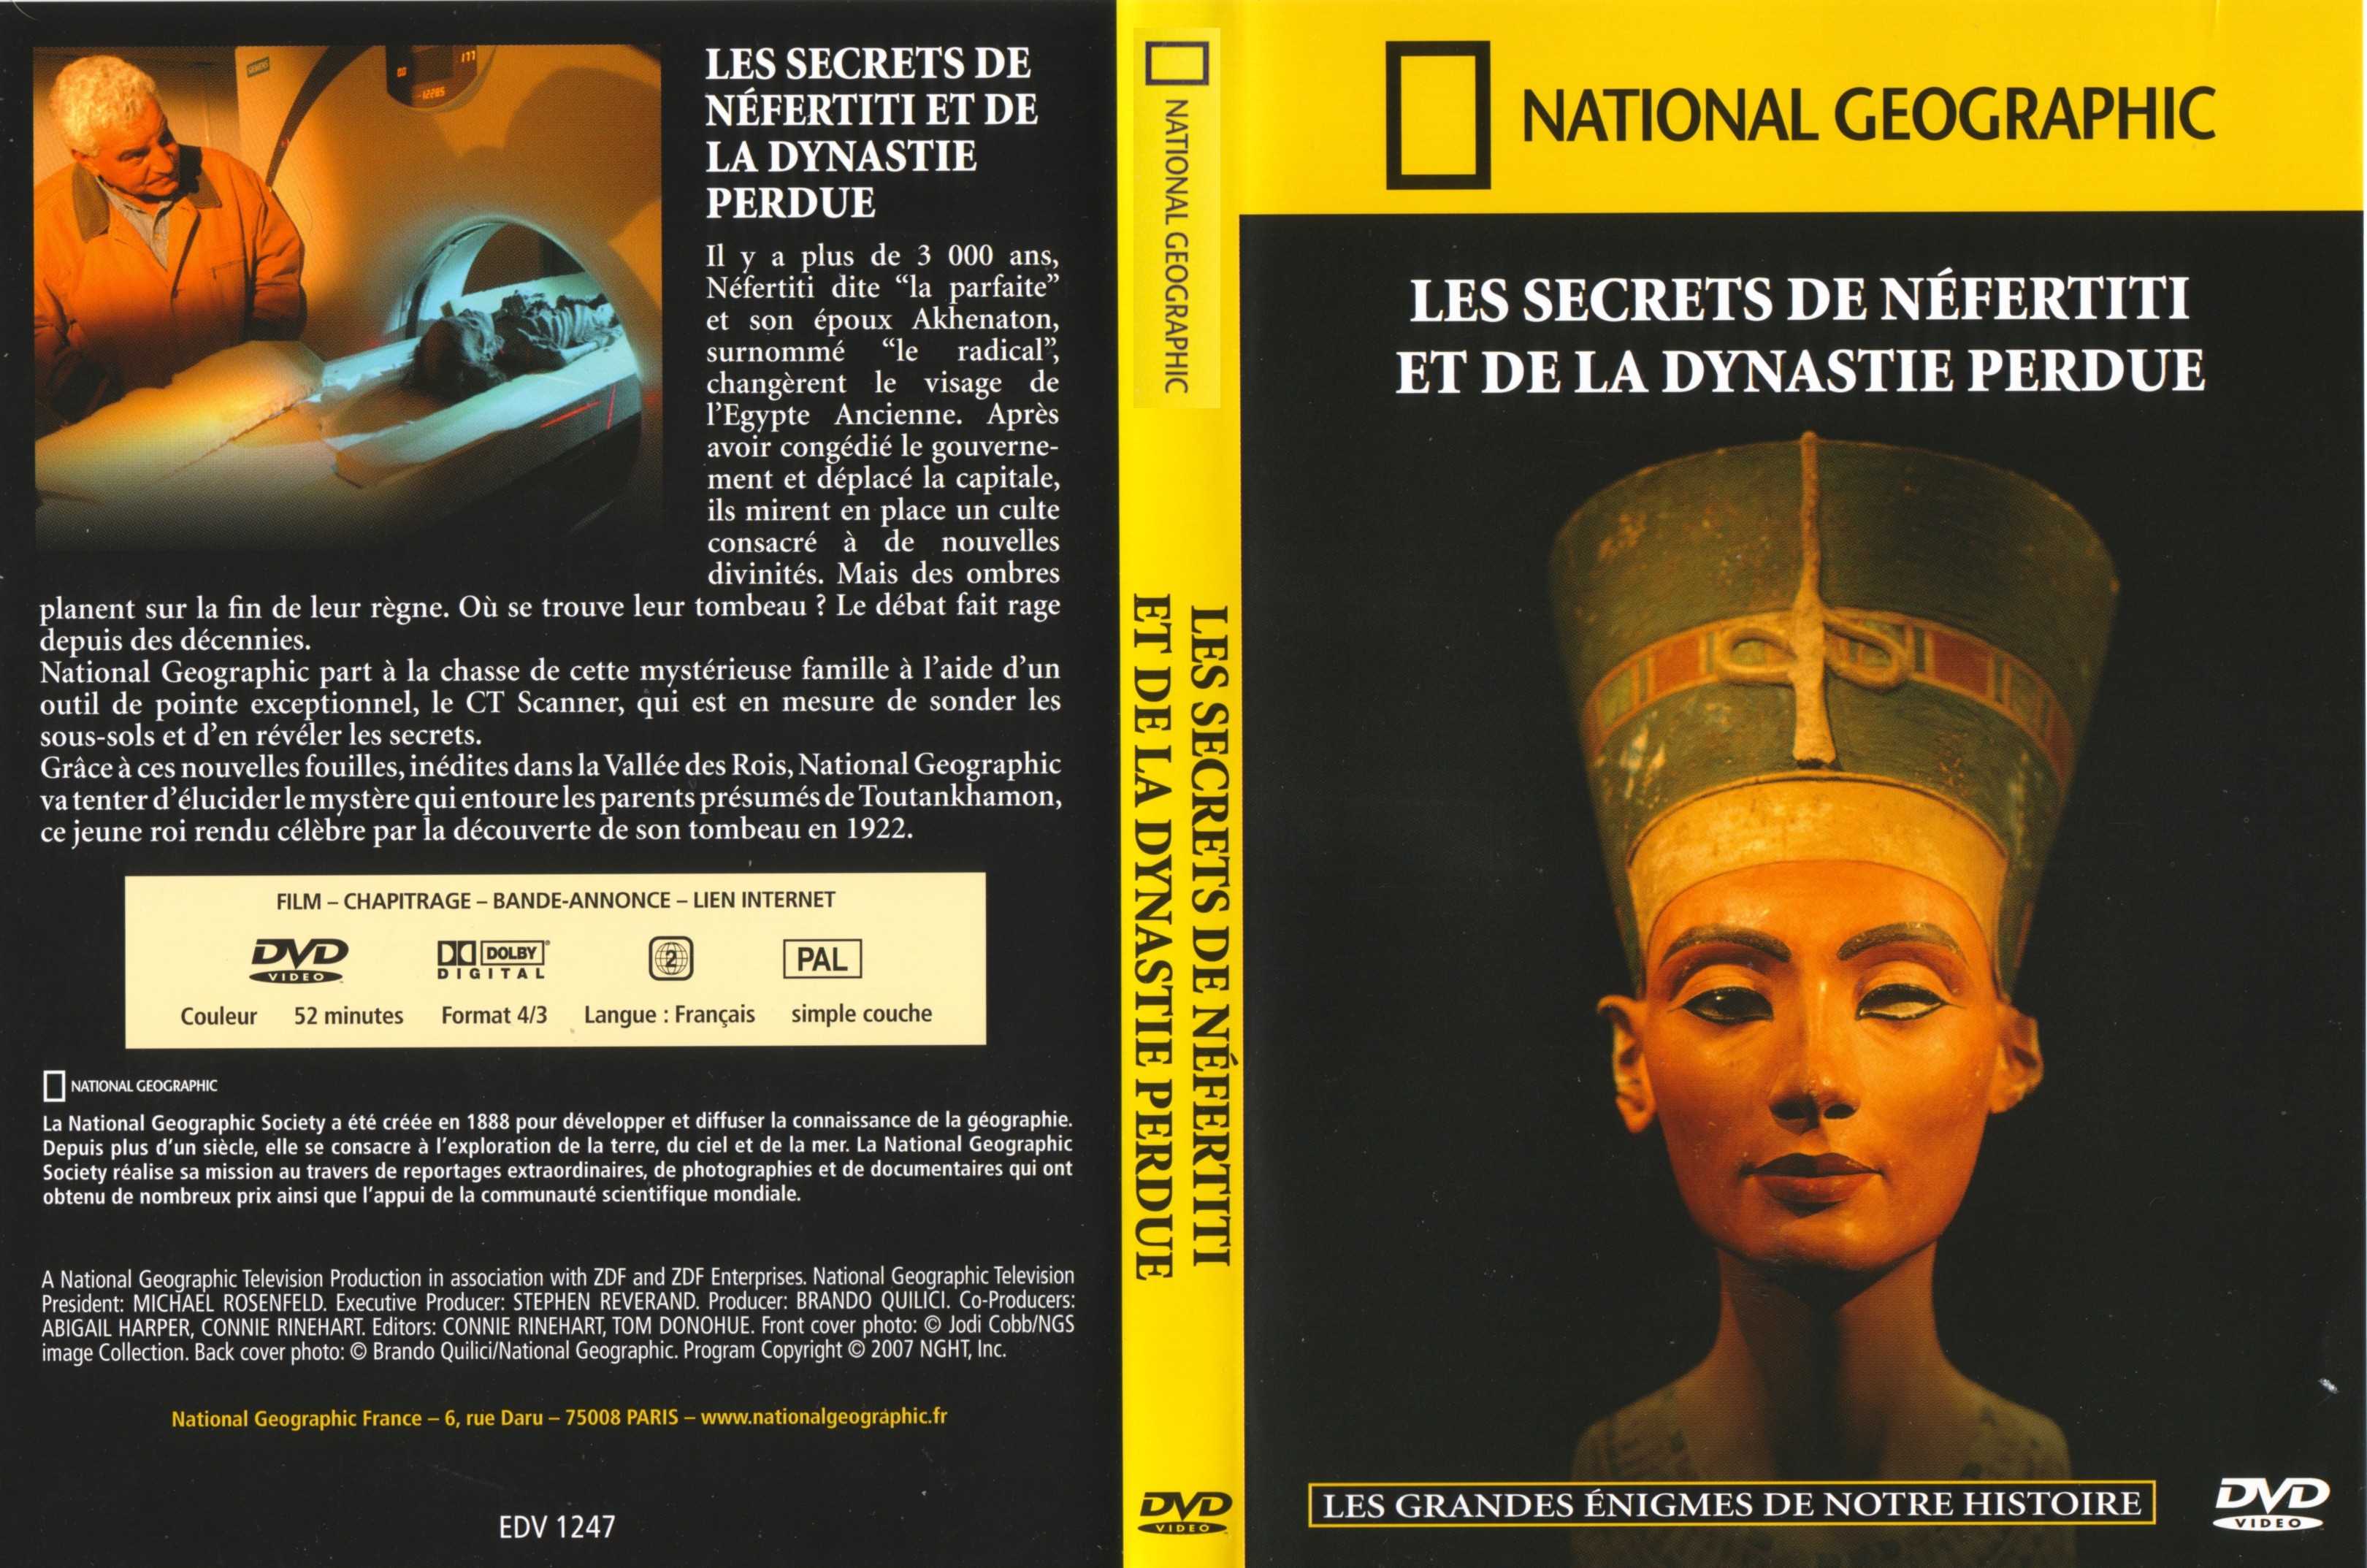 Jaquette DVD National Geographic - Les secrets de Nfertiti